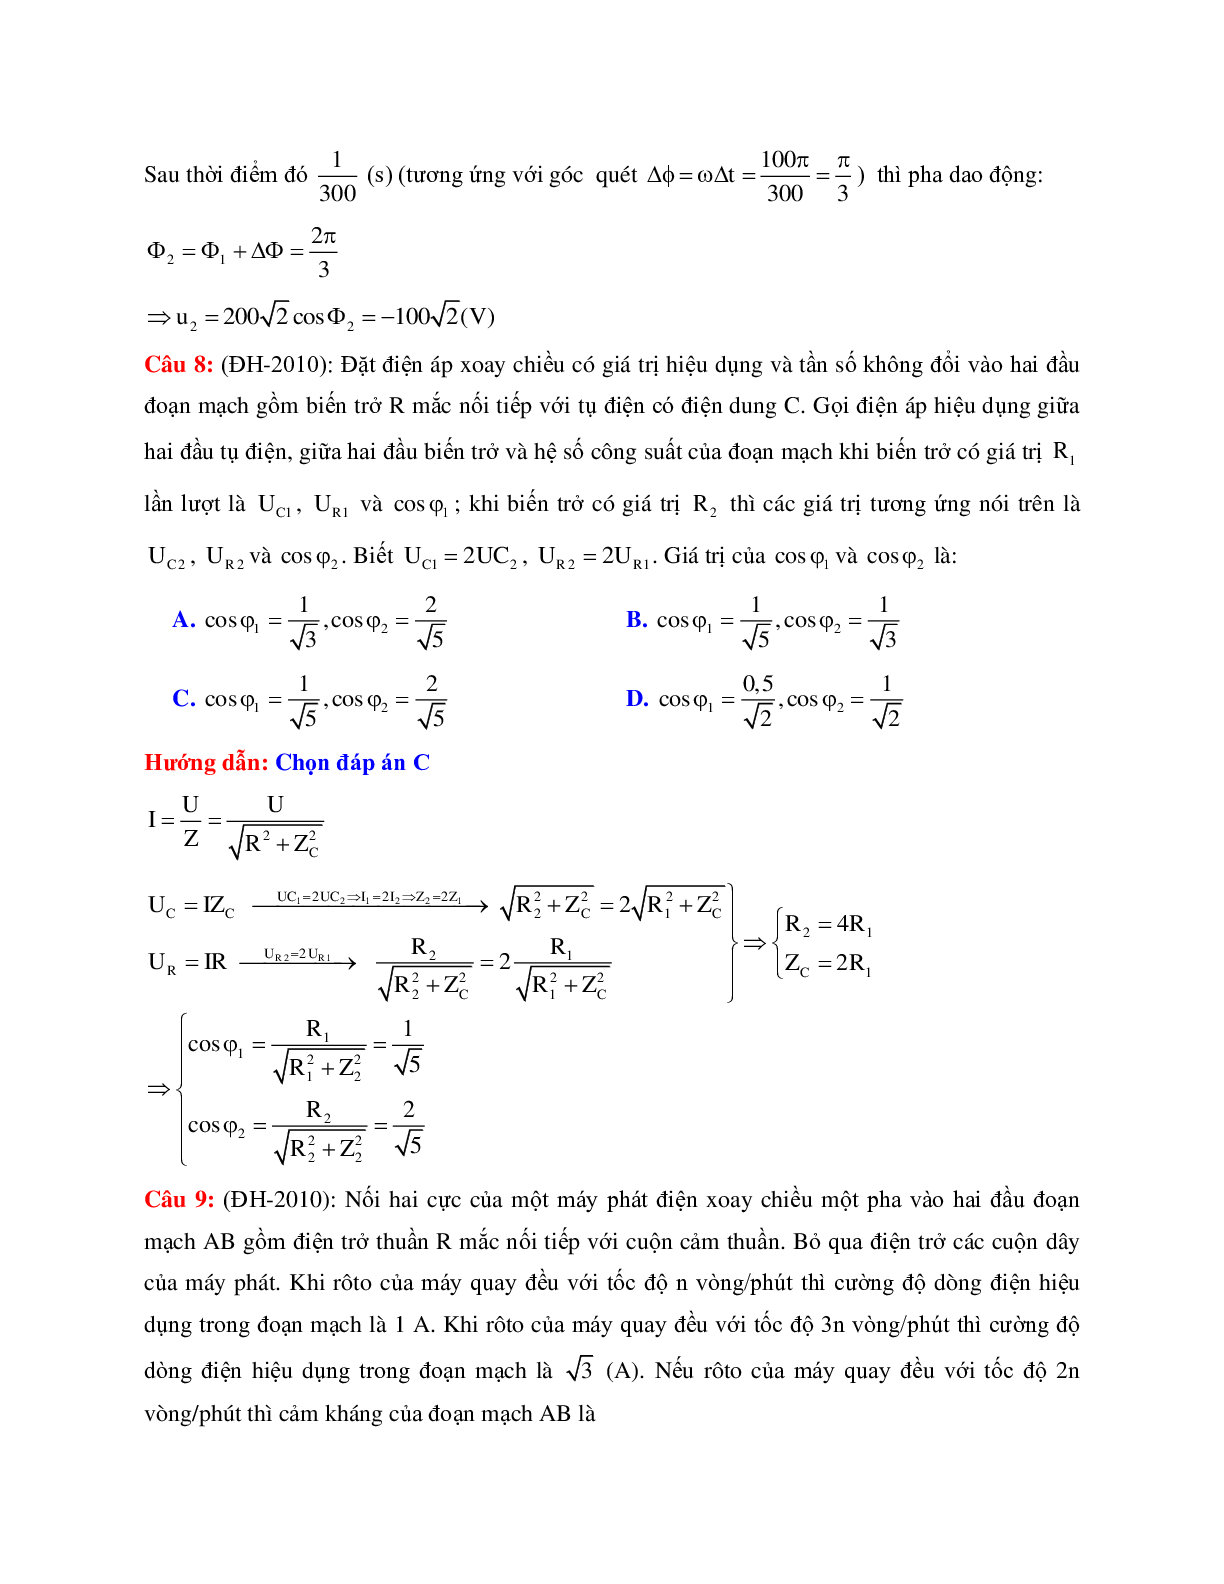 Giải nhanh chuyên đề Điện xoay chiều môn Vật lý lớp 12 (trang 4)